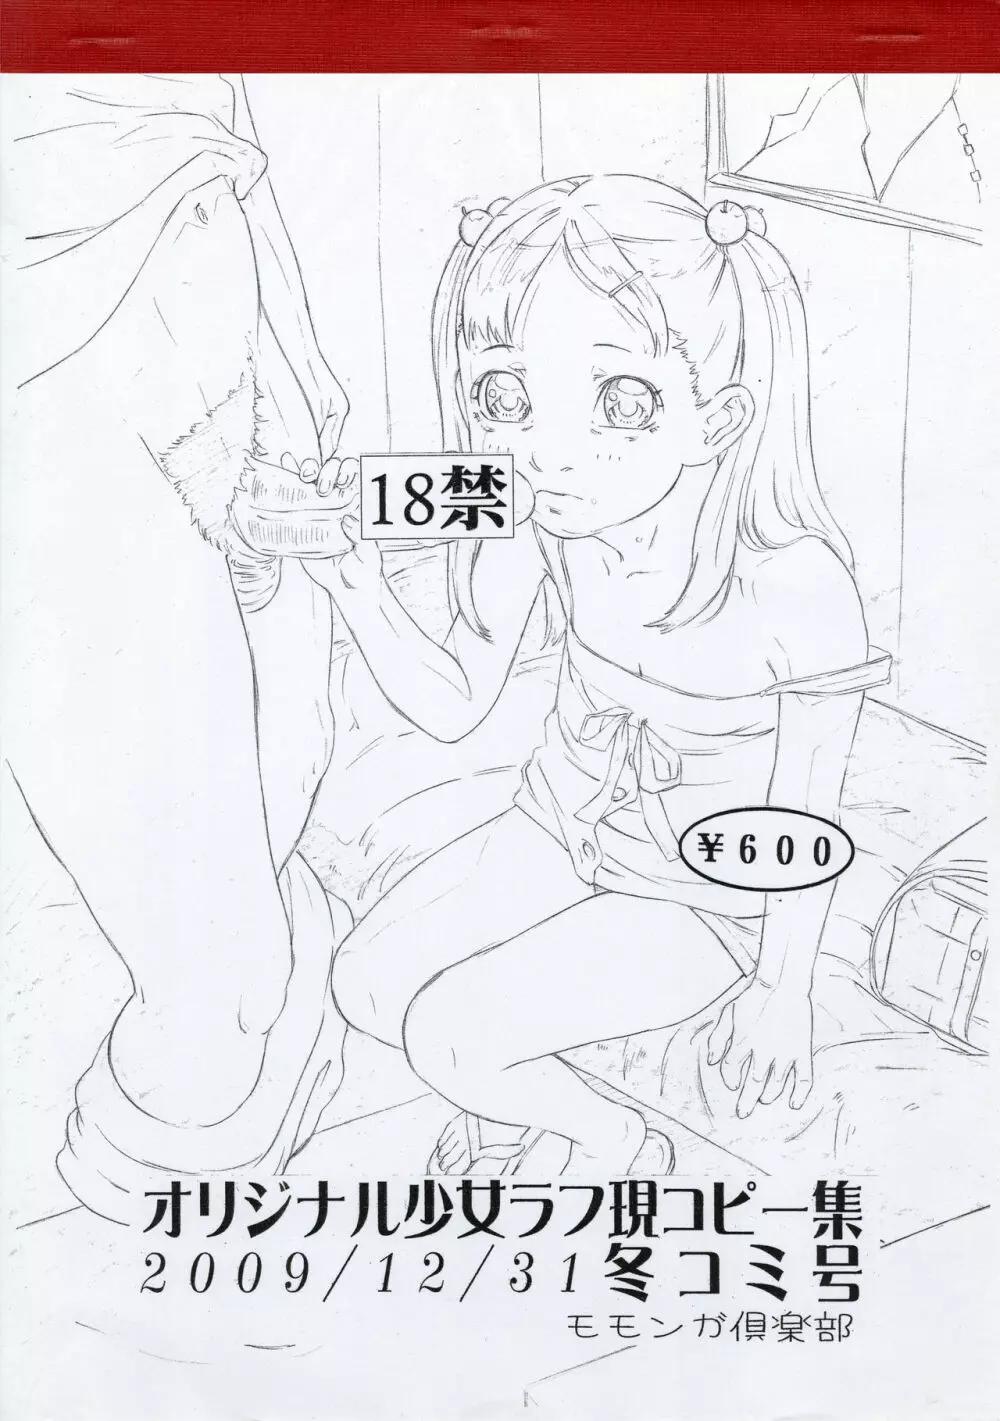 オリジナル少女ラフ現コピー集 2009/12/31 冬コミ号 1ページ